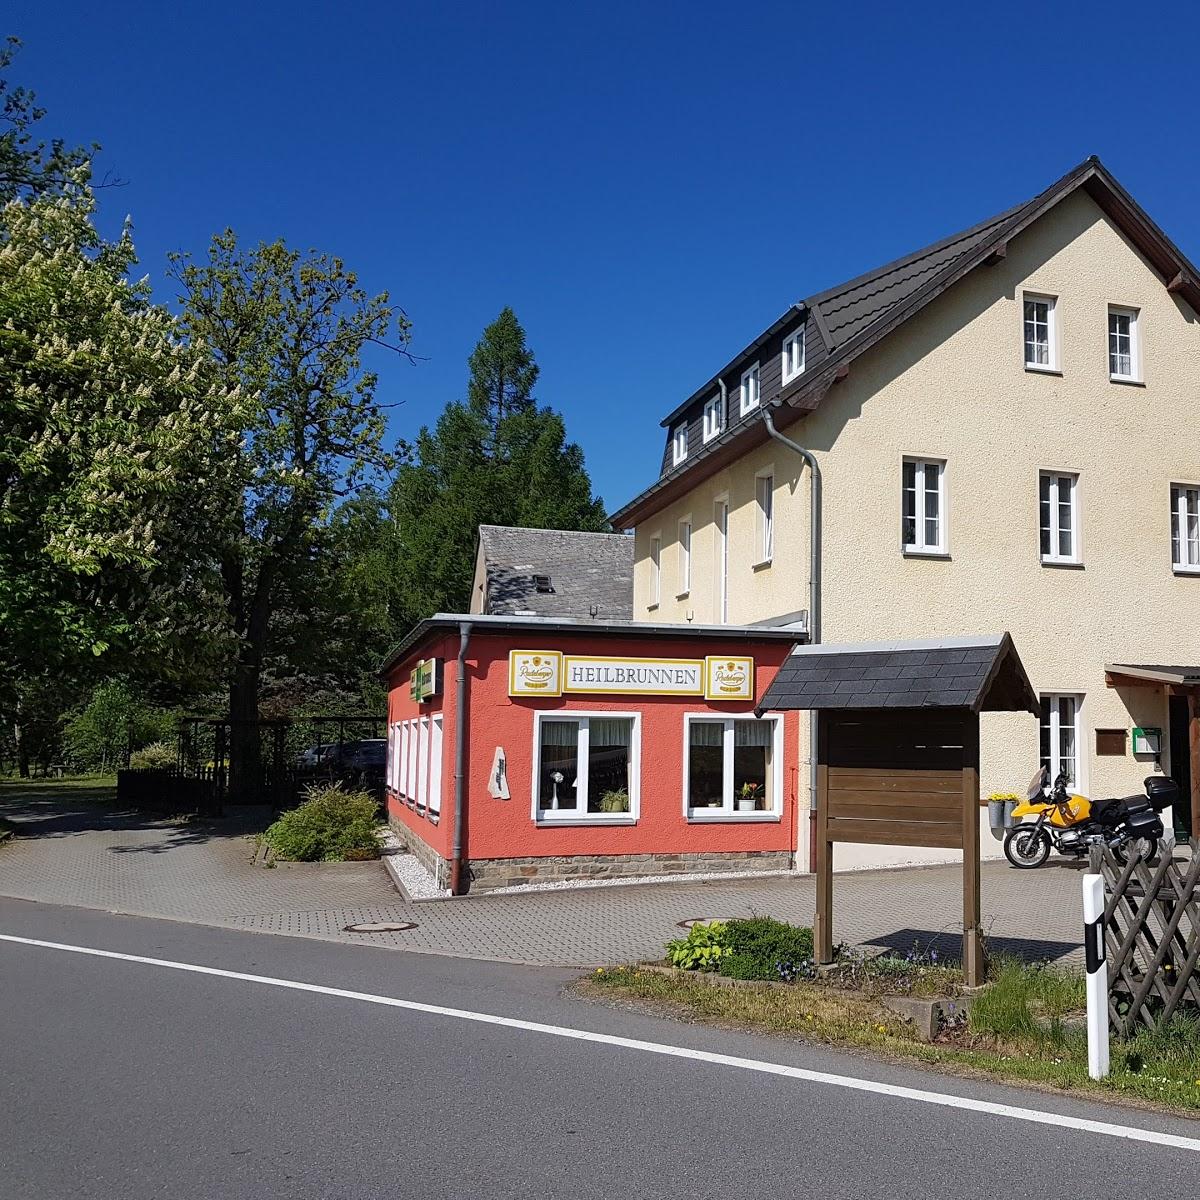 Restaurant "Hotel Heilbrunnen Erzgebirge" in Jöhstadt